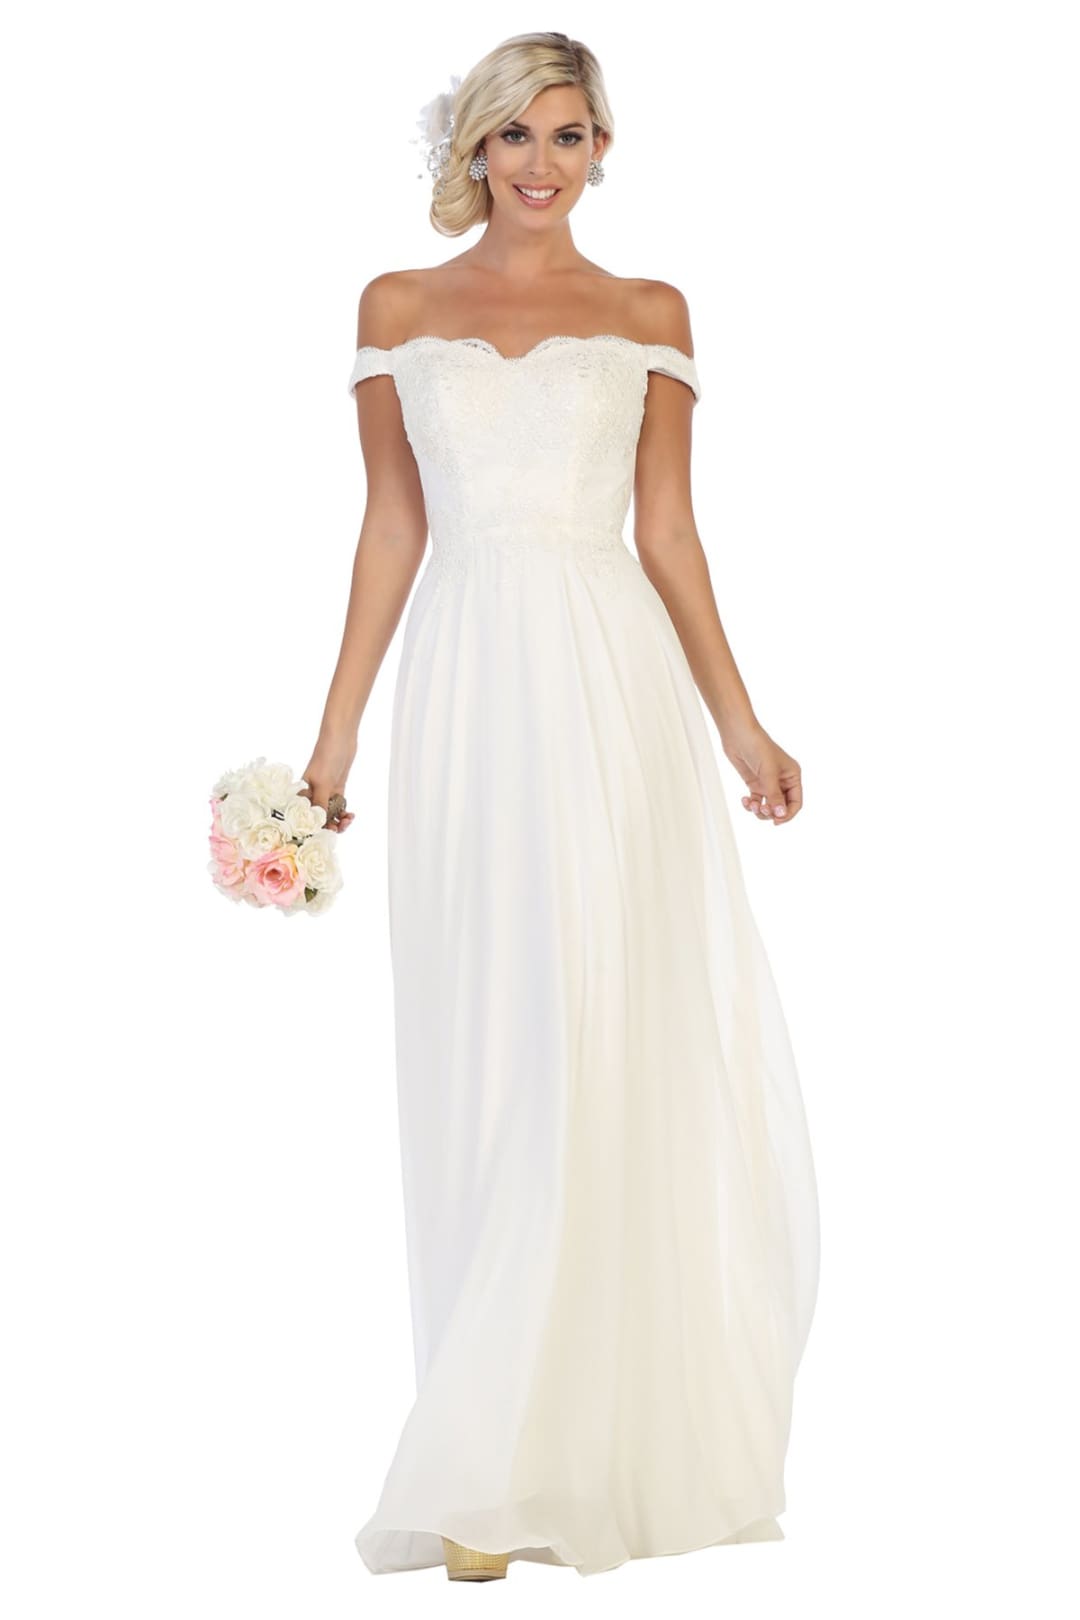 Off shoulder Ivory Bridal Dress - MQ1644B